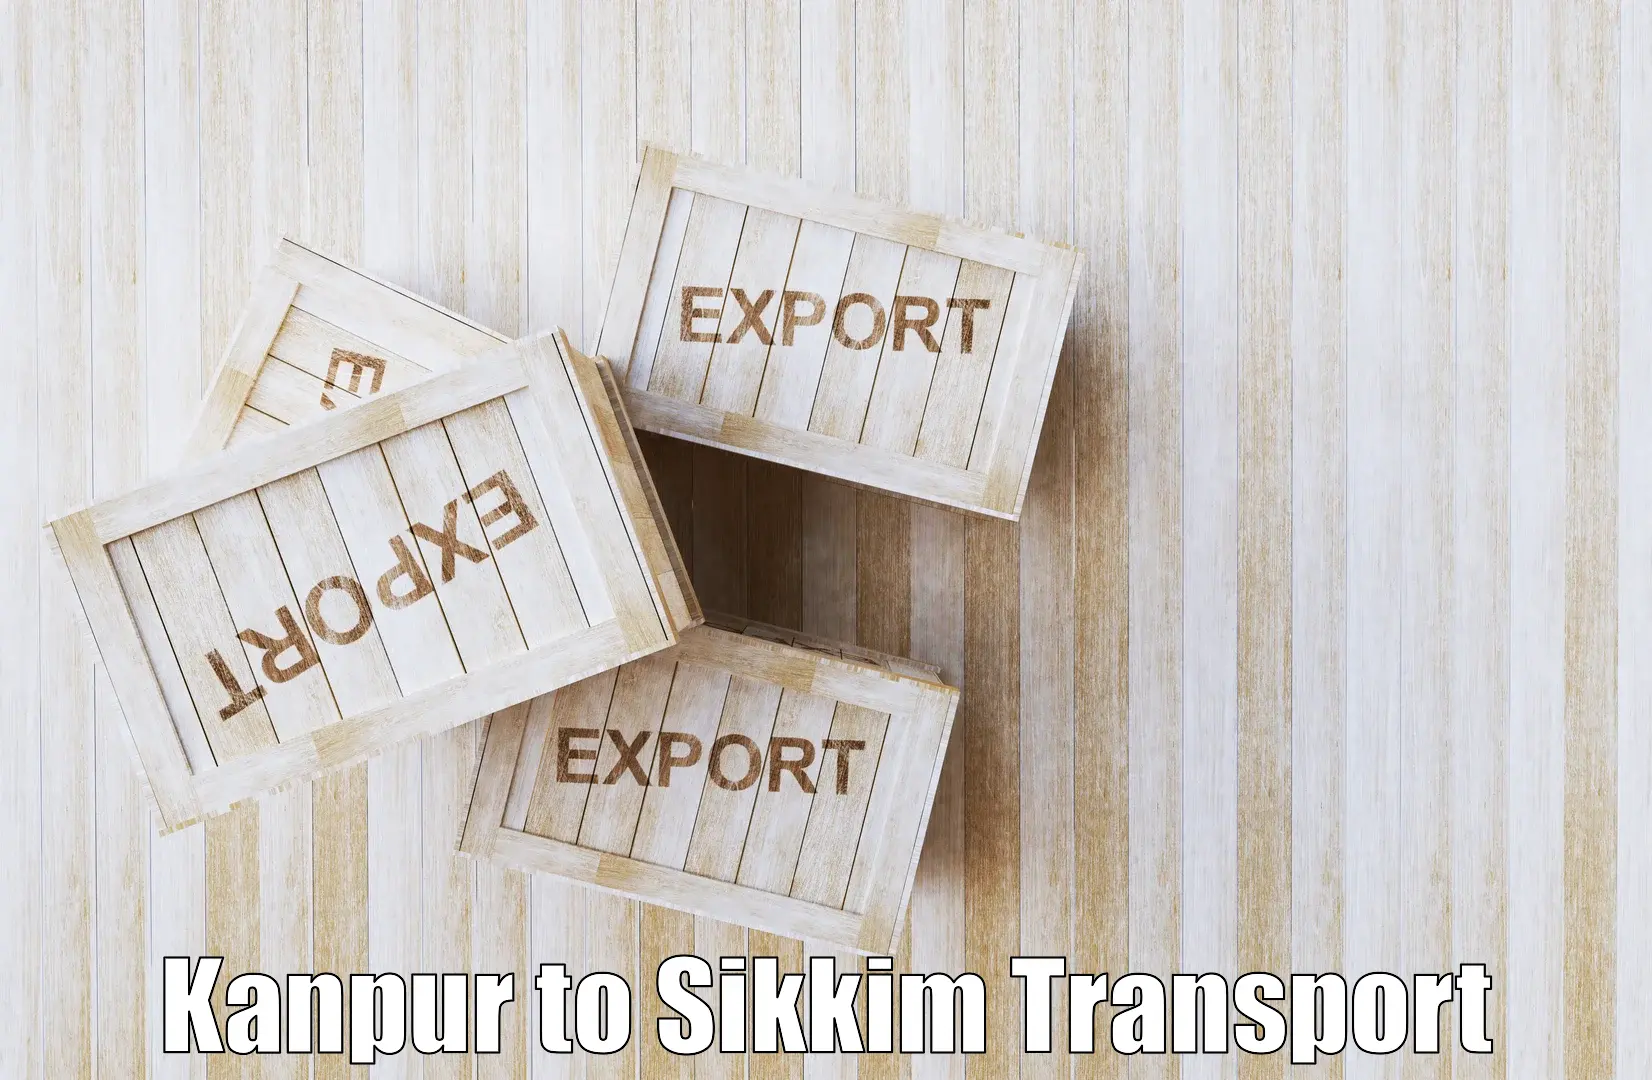 Interstate goods transport Kanpur to Mangan